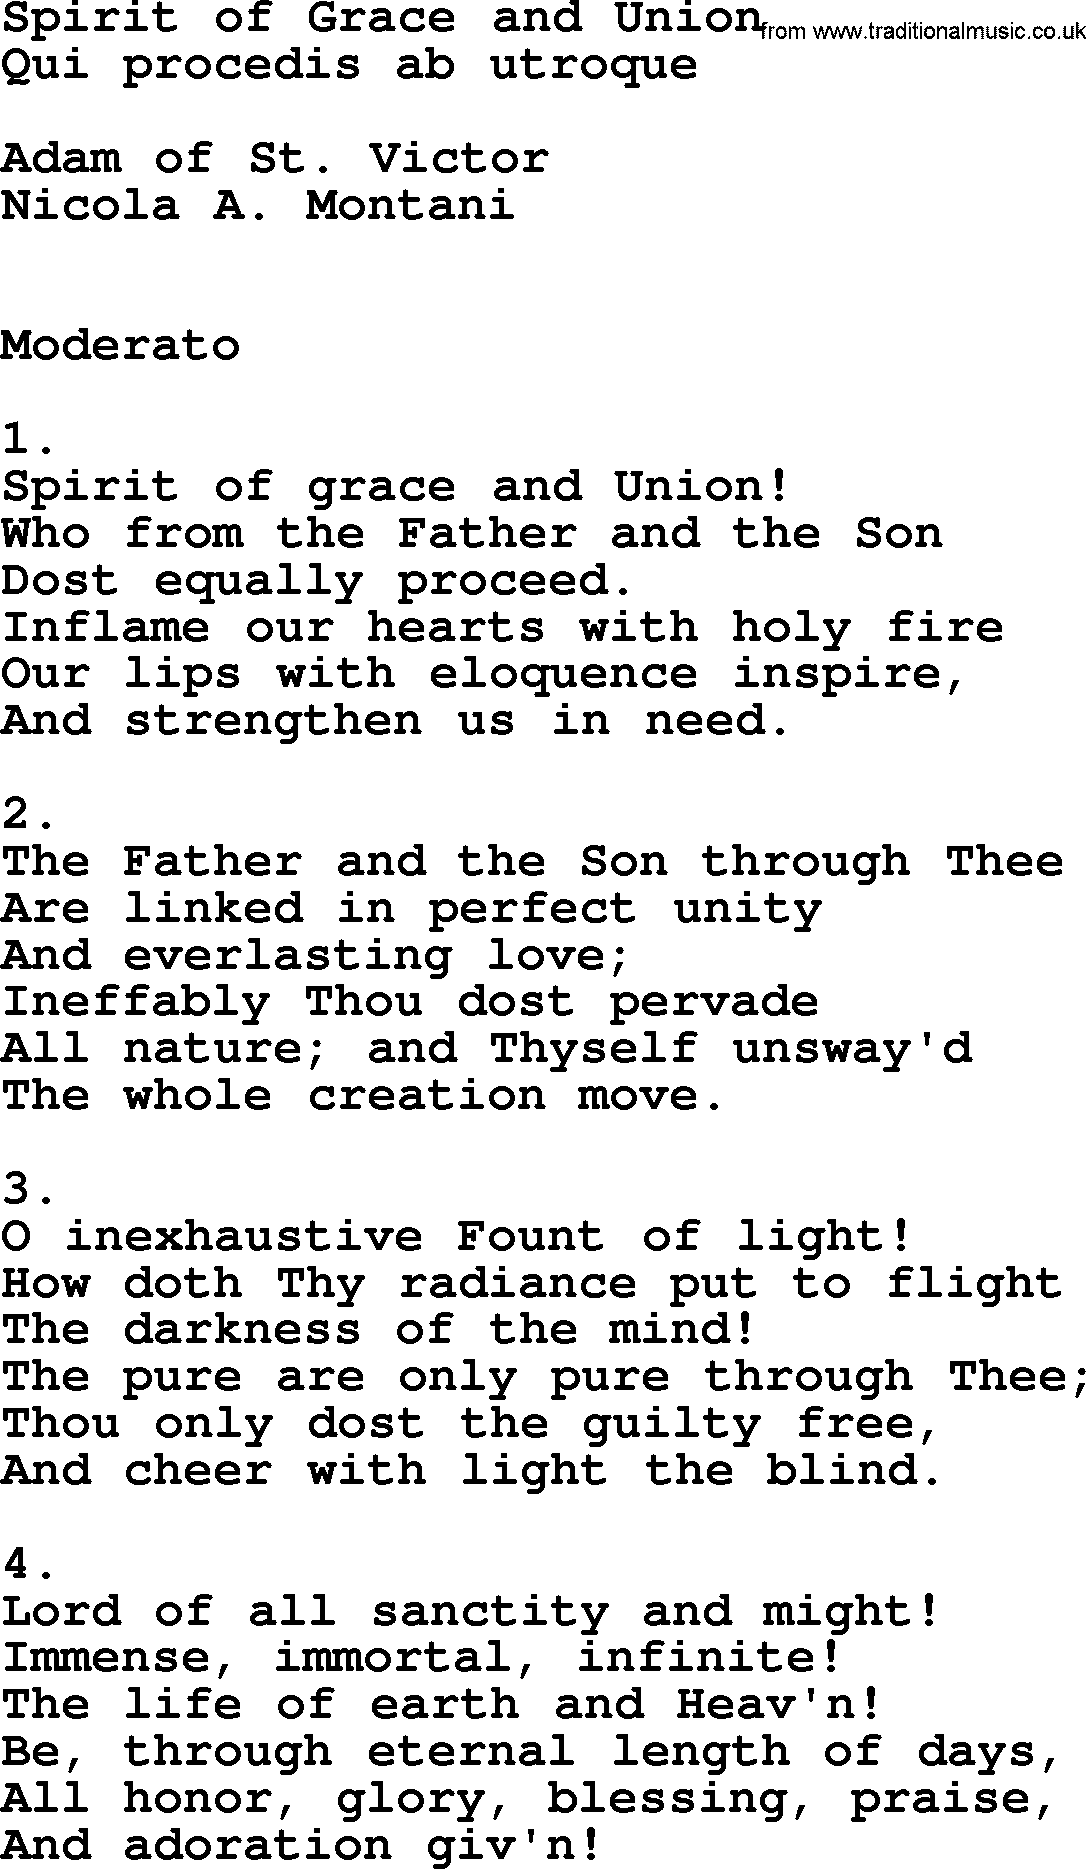 Catholic Hymn: Spirit Of Grace And Union lyrics with PDF